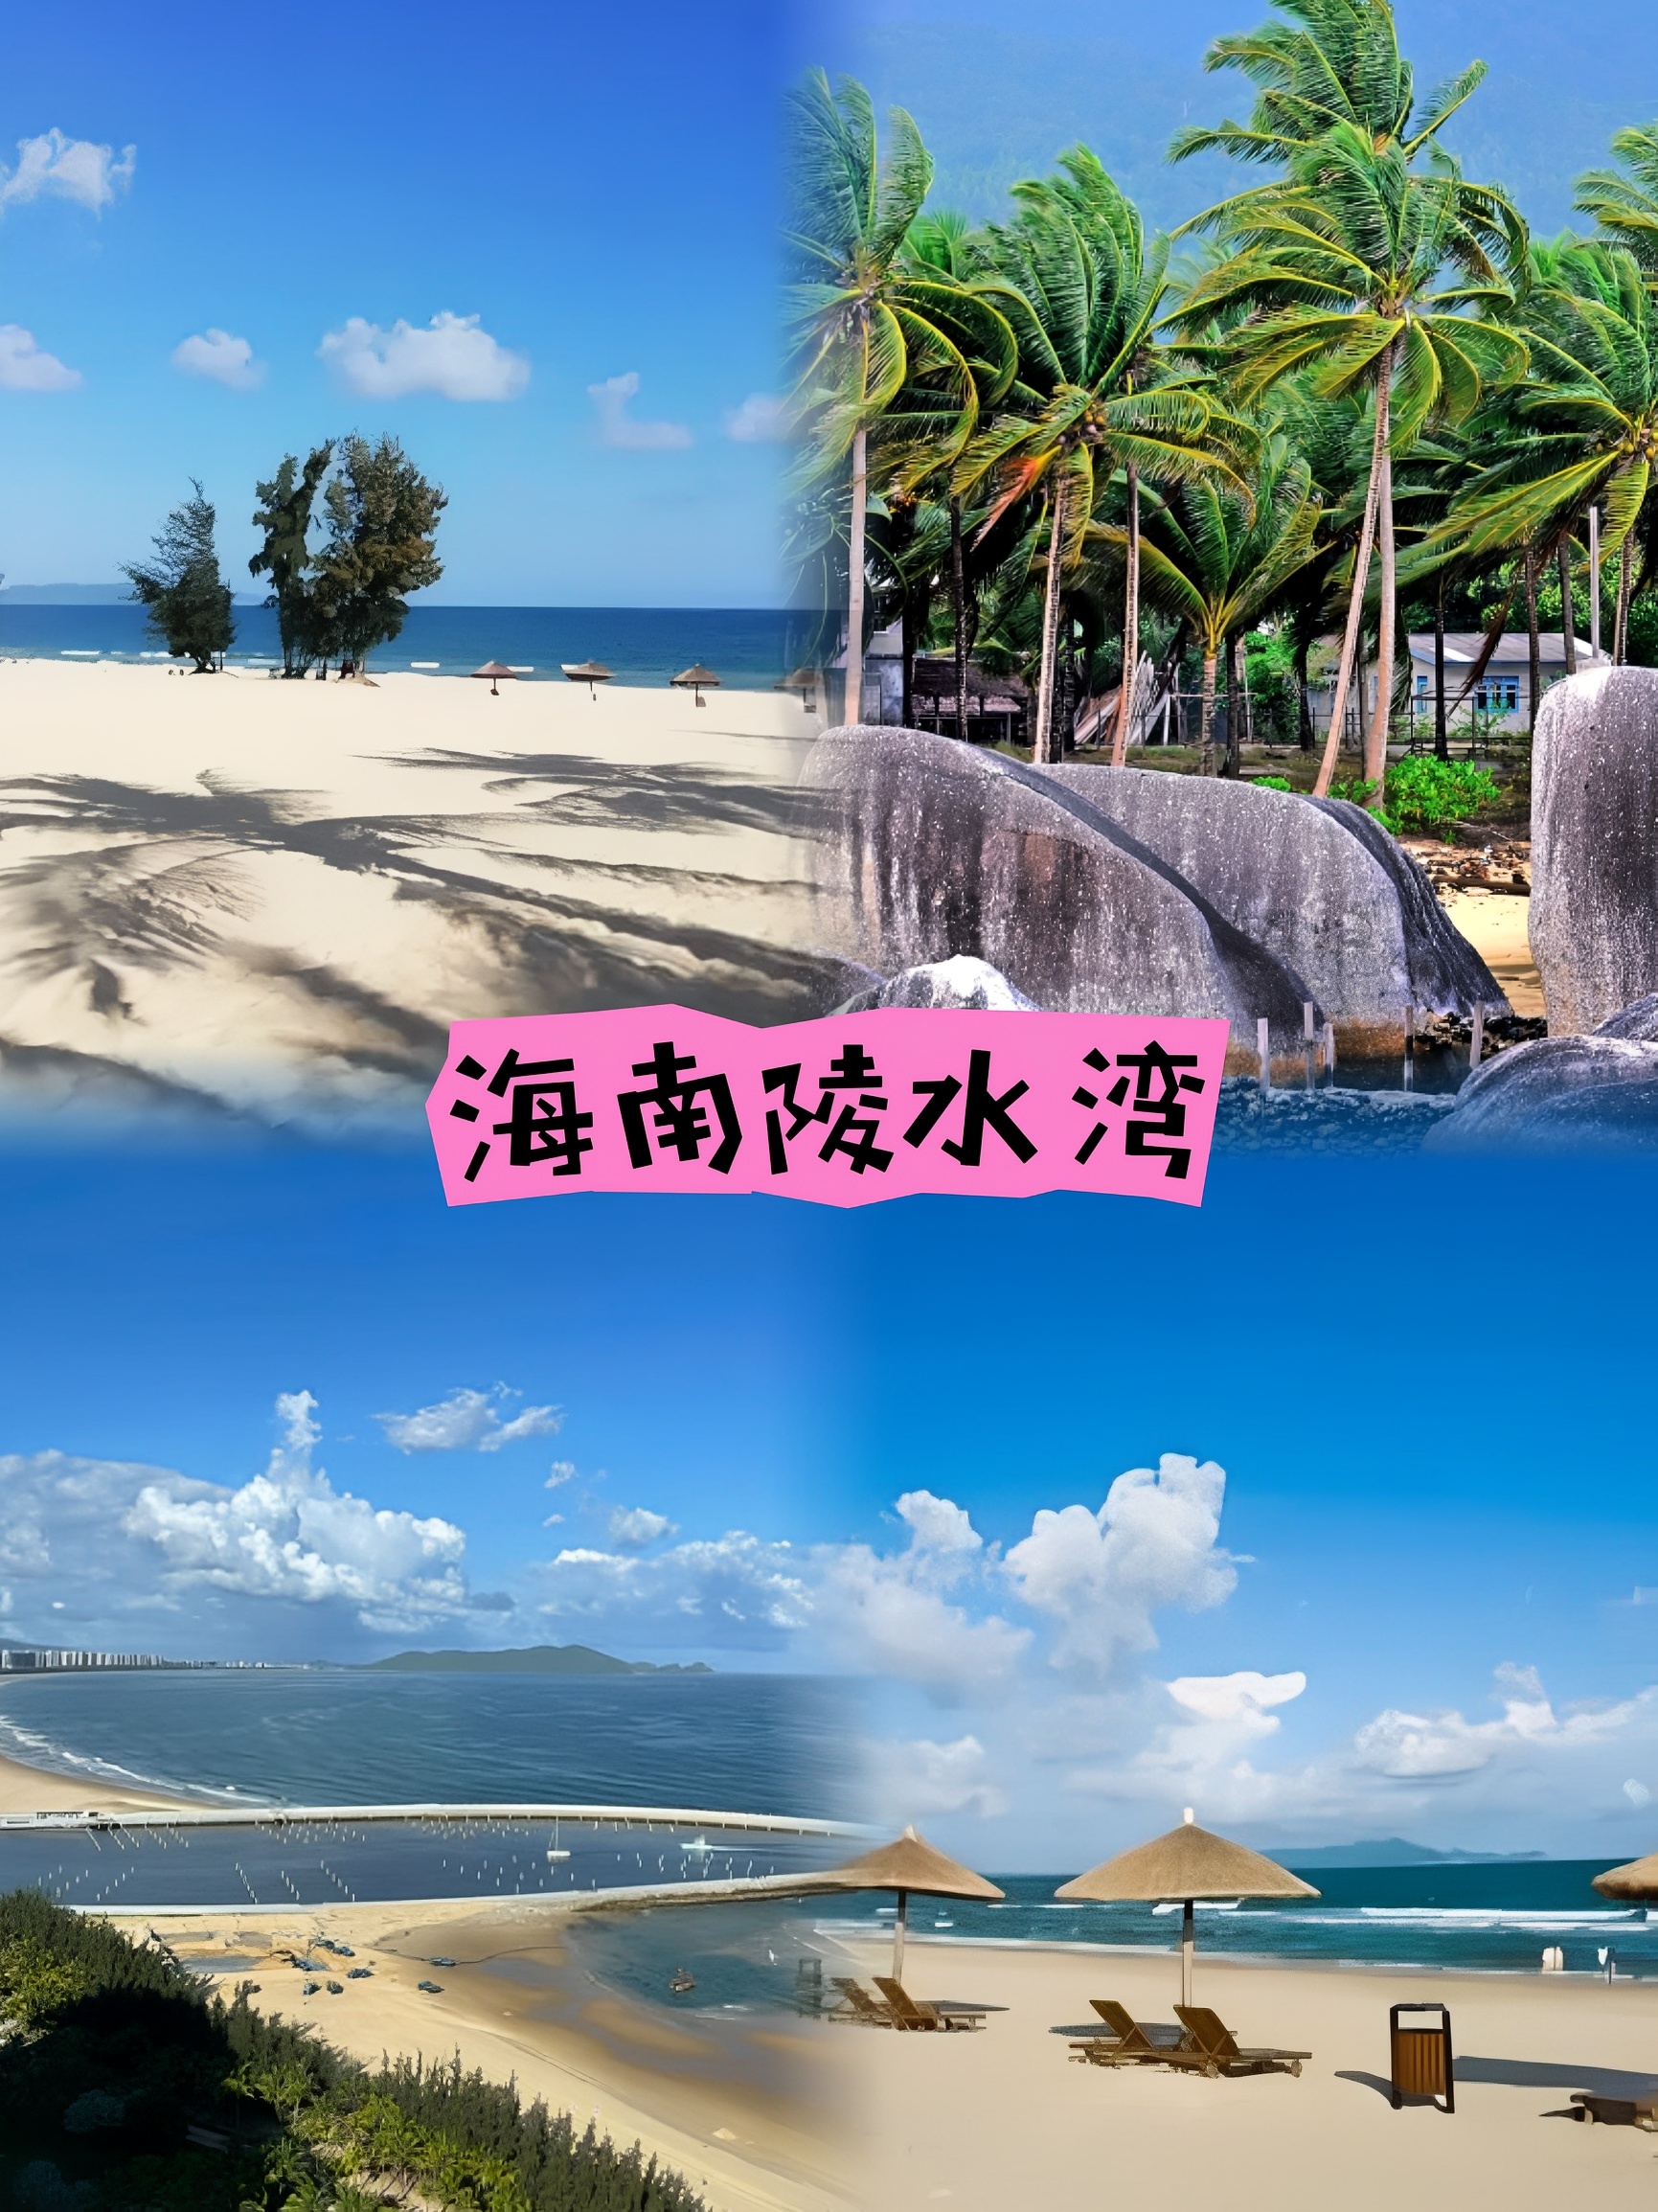 热带风情的度假天堂:海南陵水湾